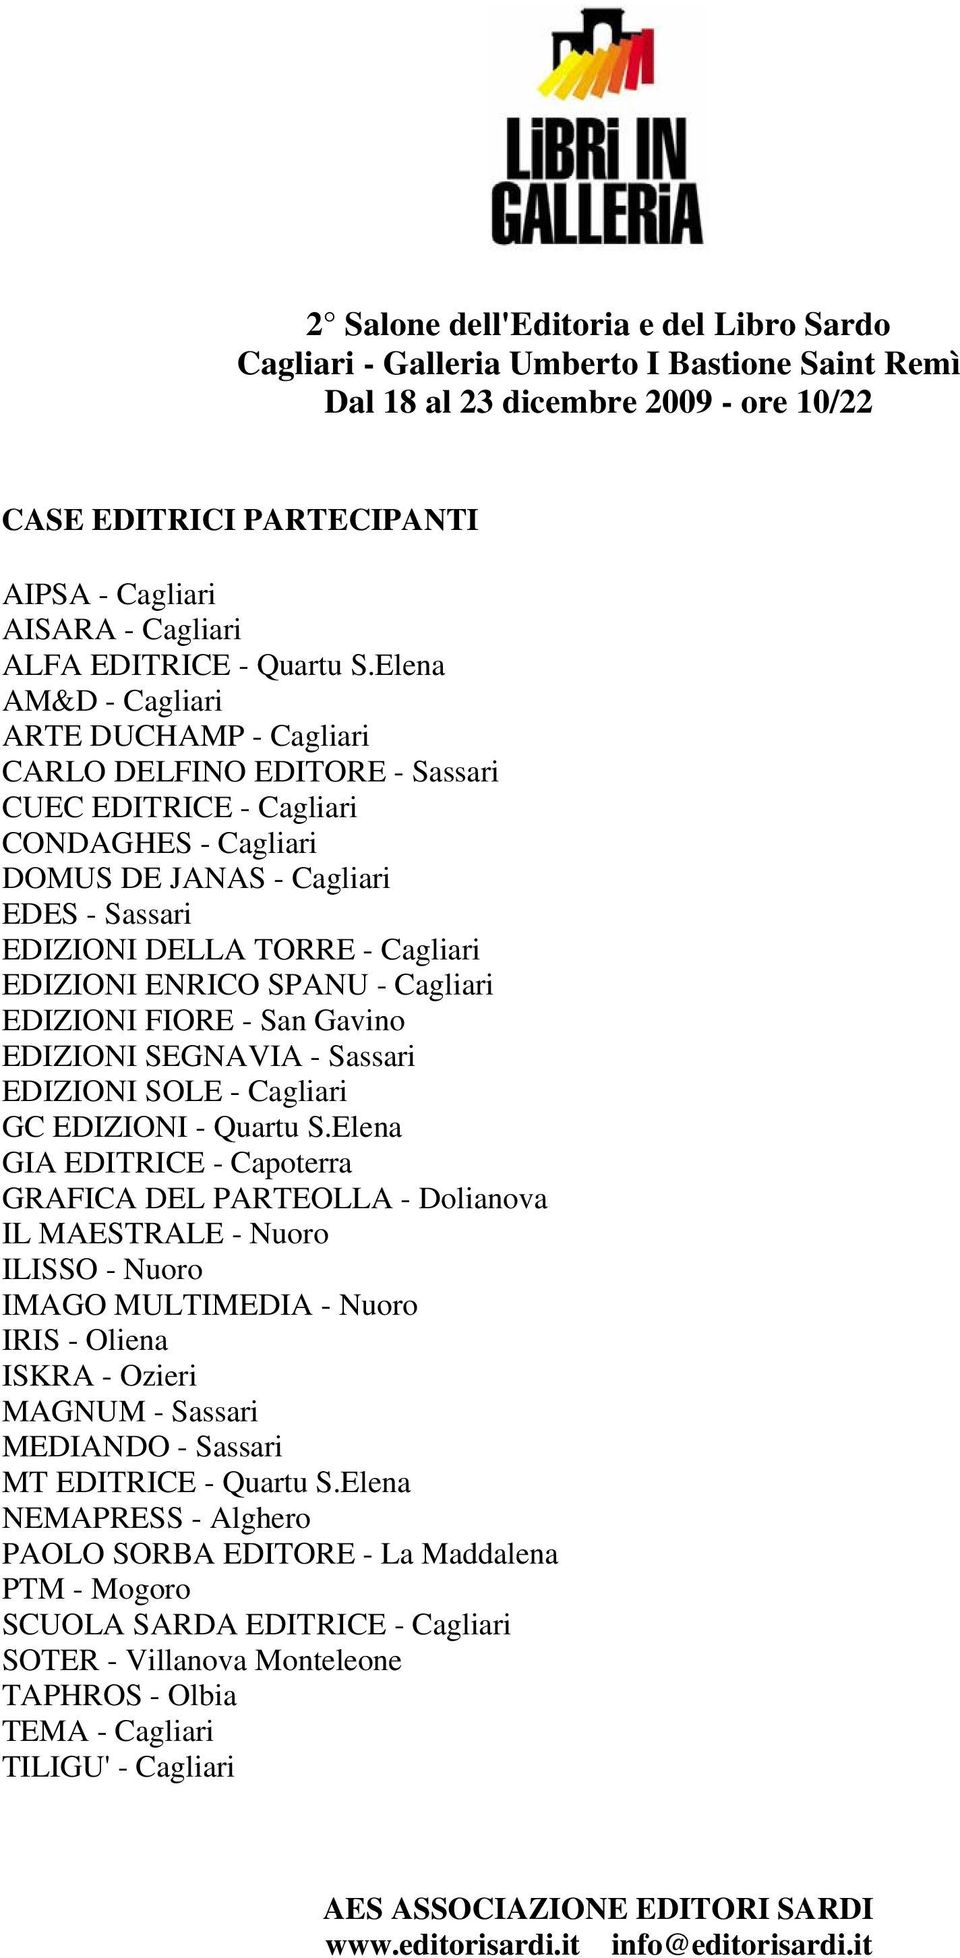 Elena AM&D - Cagliari ARTE DUCHAMP - Cagliari CARLO DELFINO EDITORE - Sassari CUEC EDITRICE - Cagliari CONDAGHES - Cagliari DOMUS DE JANAS - Cagliari EDES - Sassari EDIZIONI DELLA TORRE - Cagliari